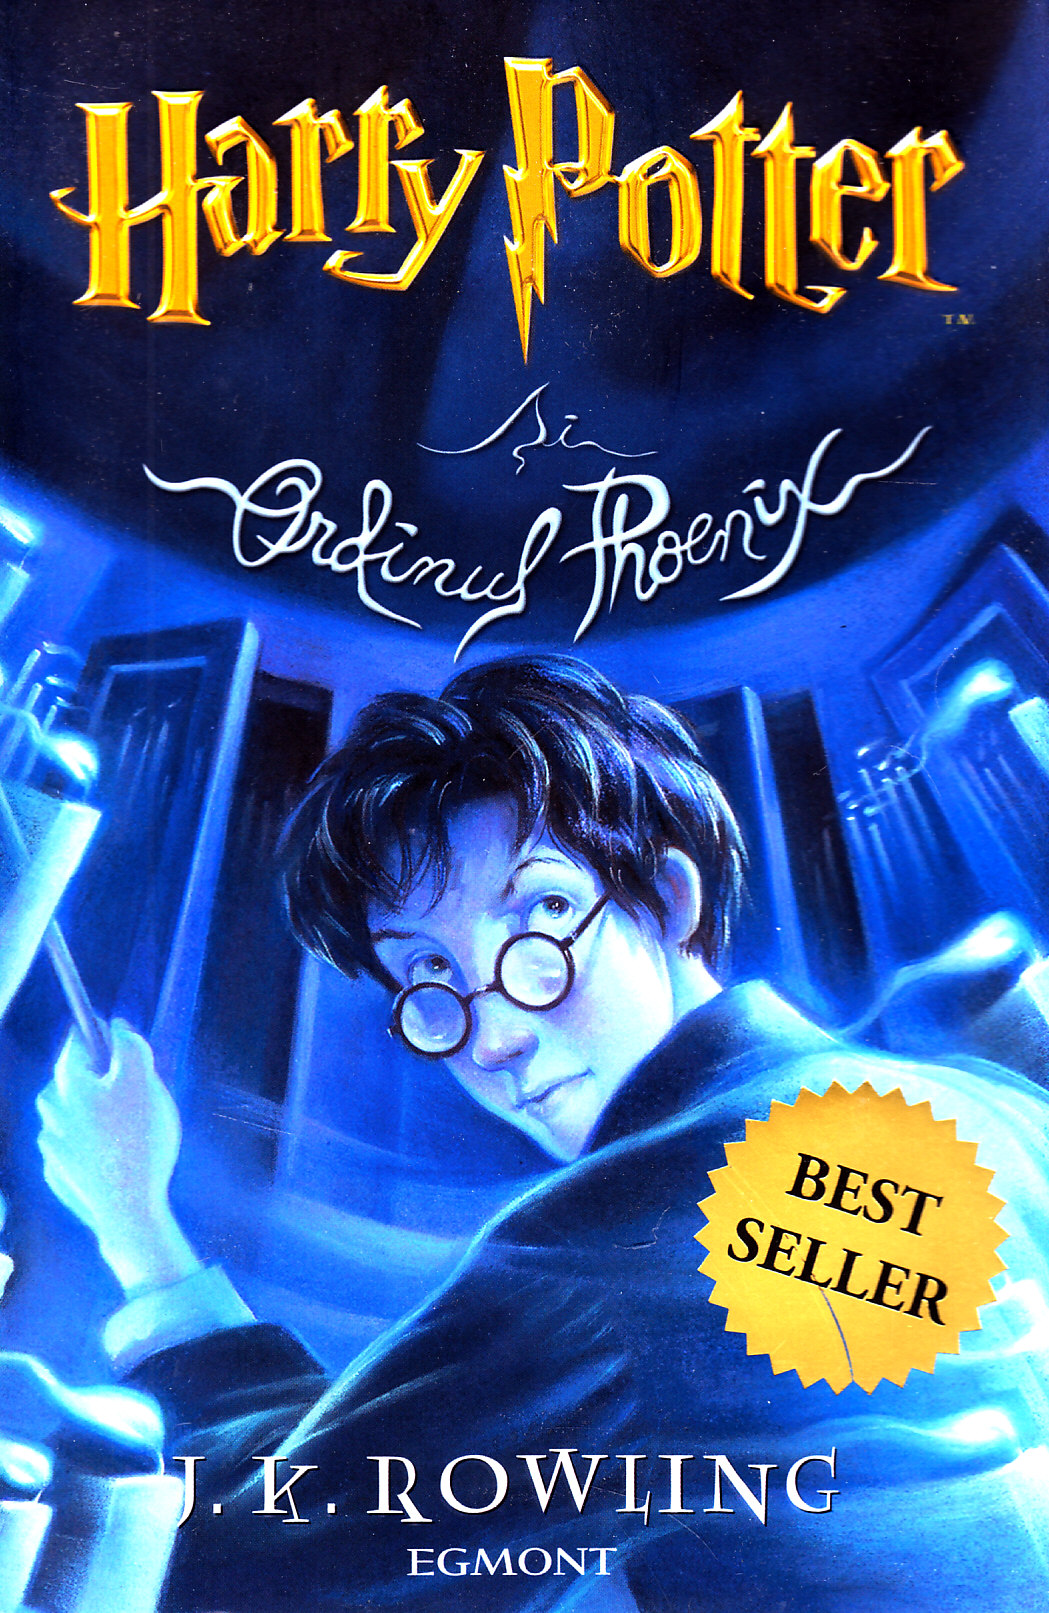 Harry Potter si Ordinul Phoenix vol.5 ed.2012 - J. K. Rowling